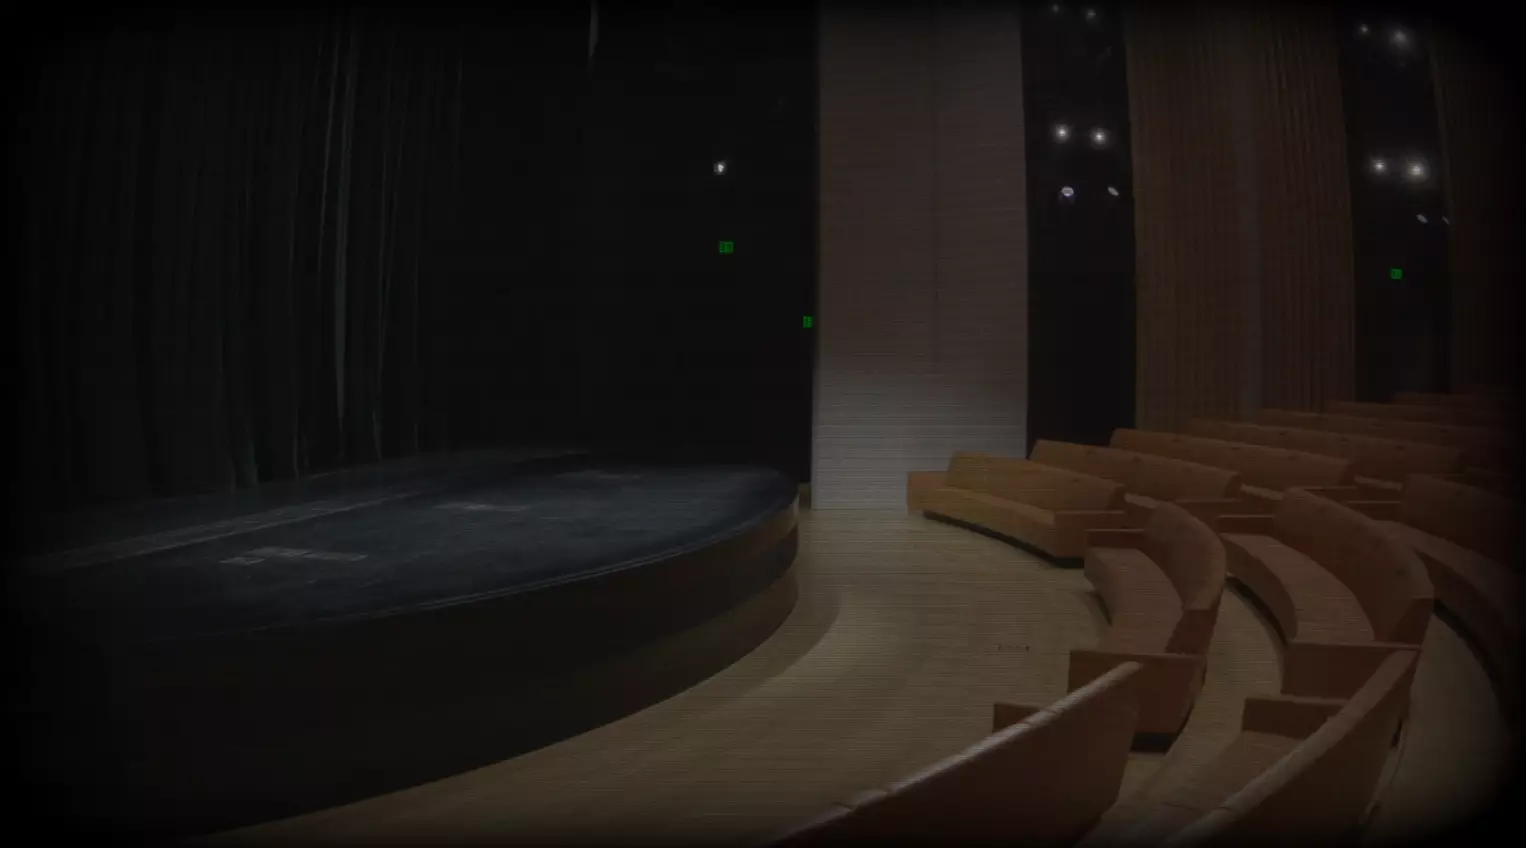 Apple стримит пустой зал "Театра Стива Джобса"